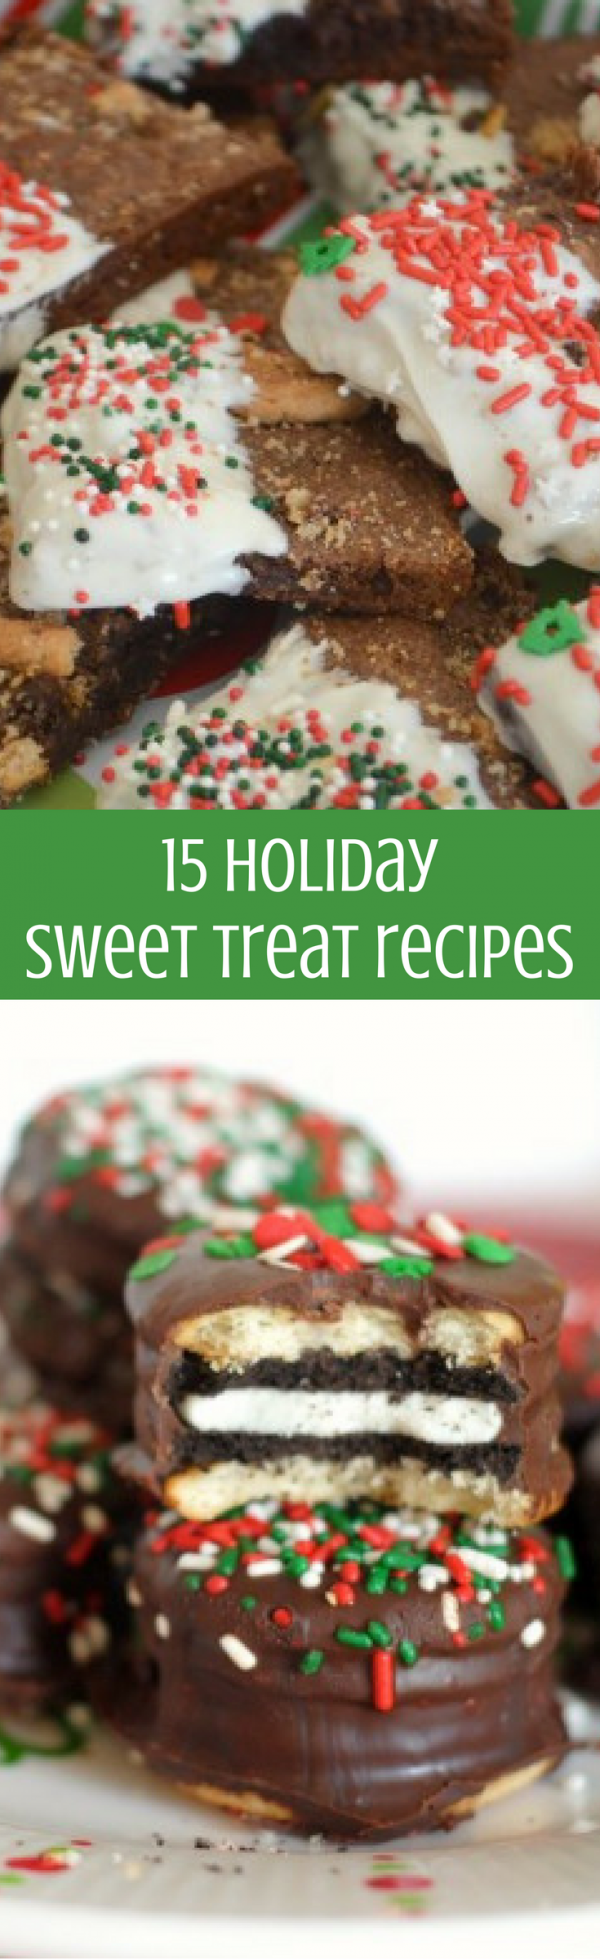 15 Holiday Sweet Treat Recipes